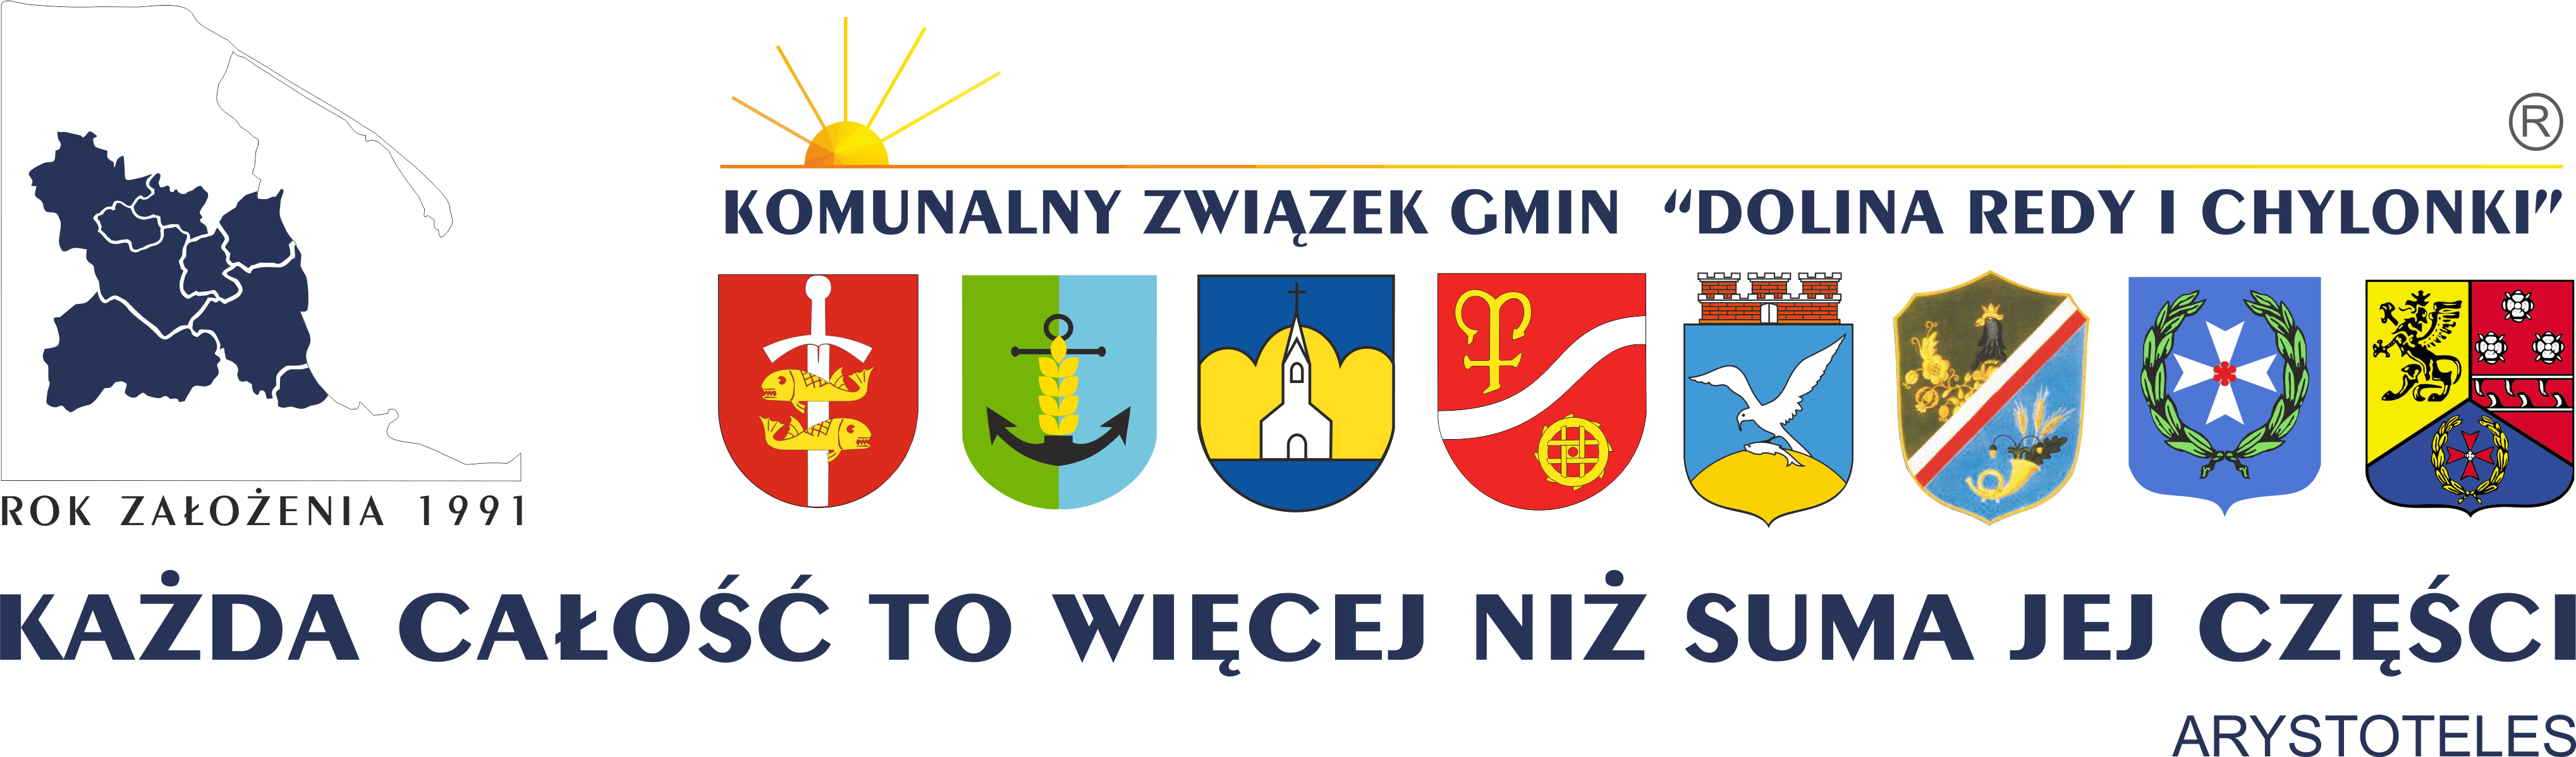 logo kzg